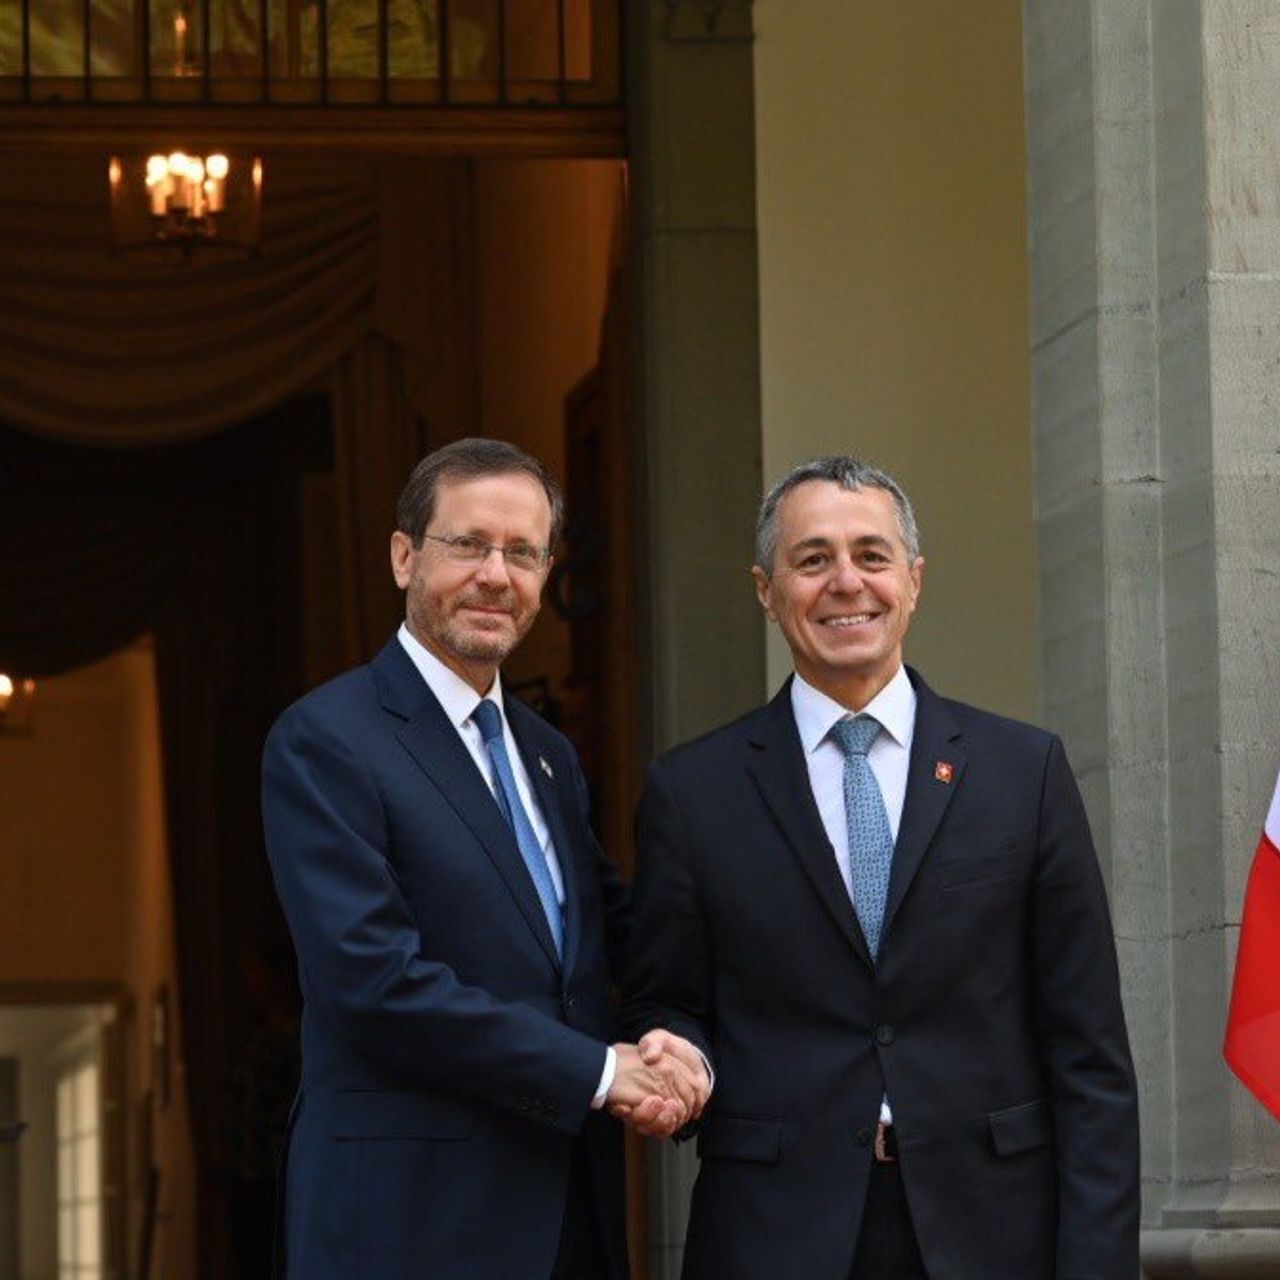 El encuentro oficial entre Isaac Herzog, presidente del Estado de Israel, e Ignazio Cassis, presidente de la Confederación Suiza, el 29 de agosto de 2022 en la Residencia Lohn